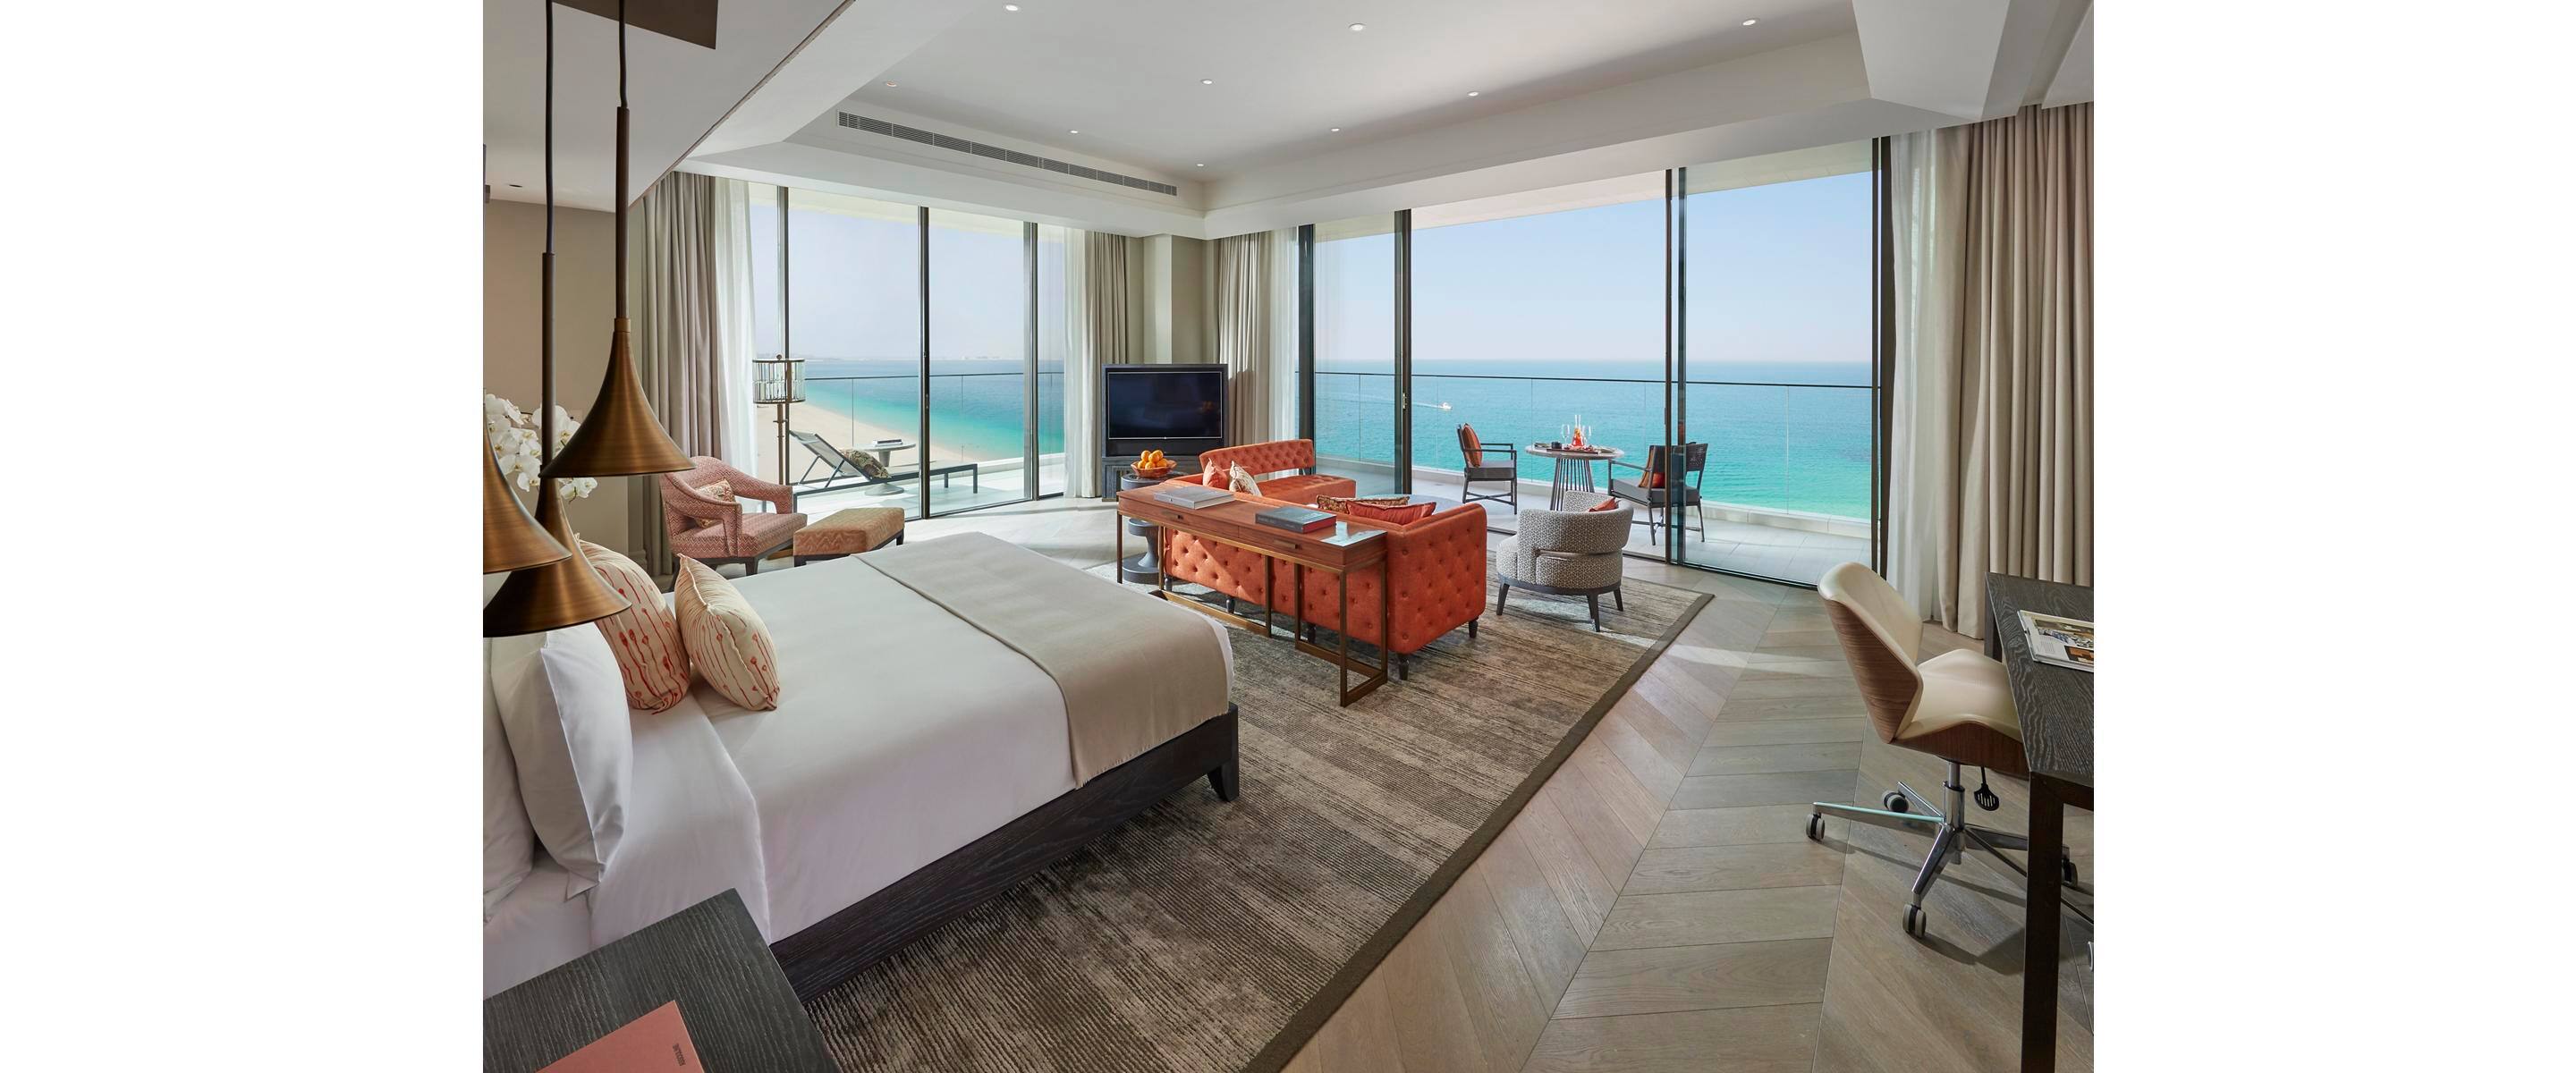  Luxury  Accommodations In Dubai  Mandarin Oriental Jumeira 